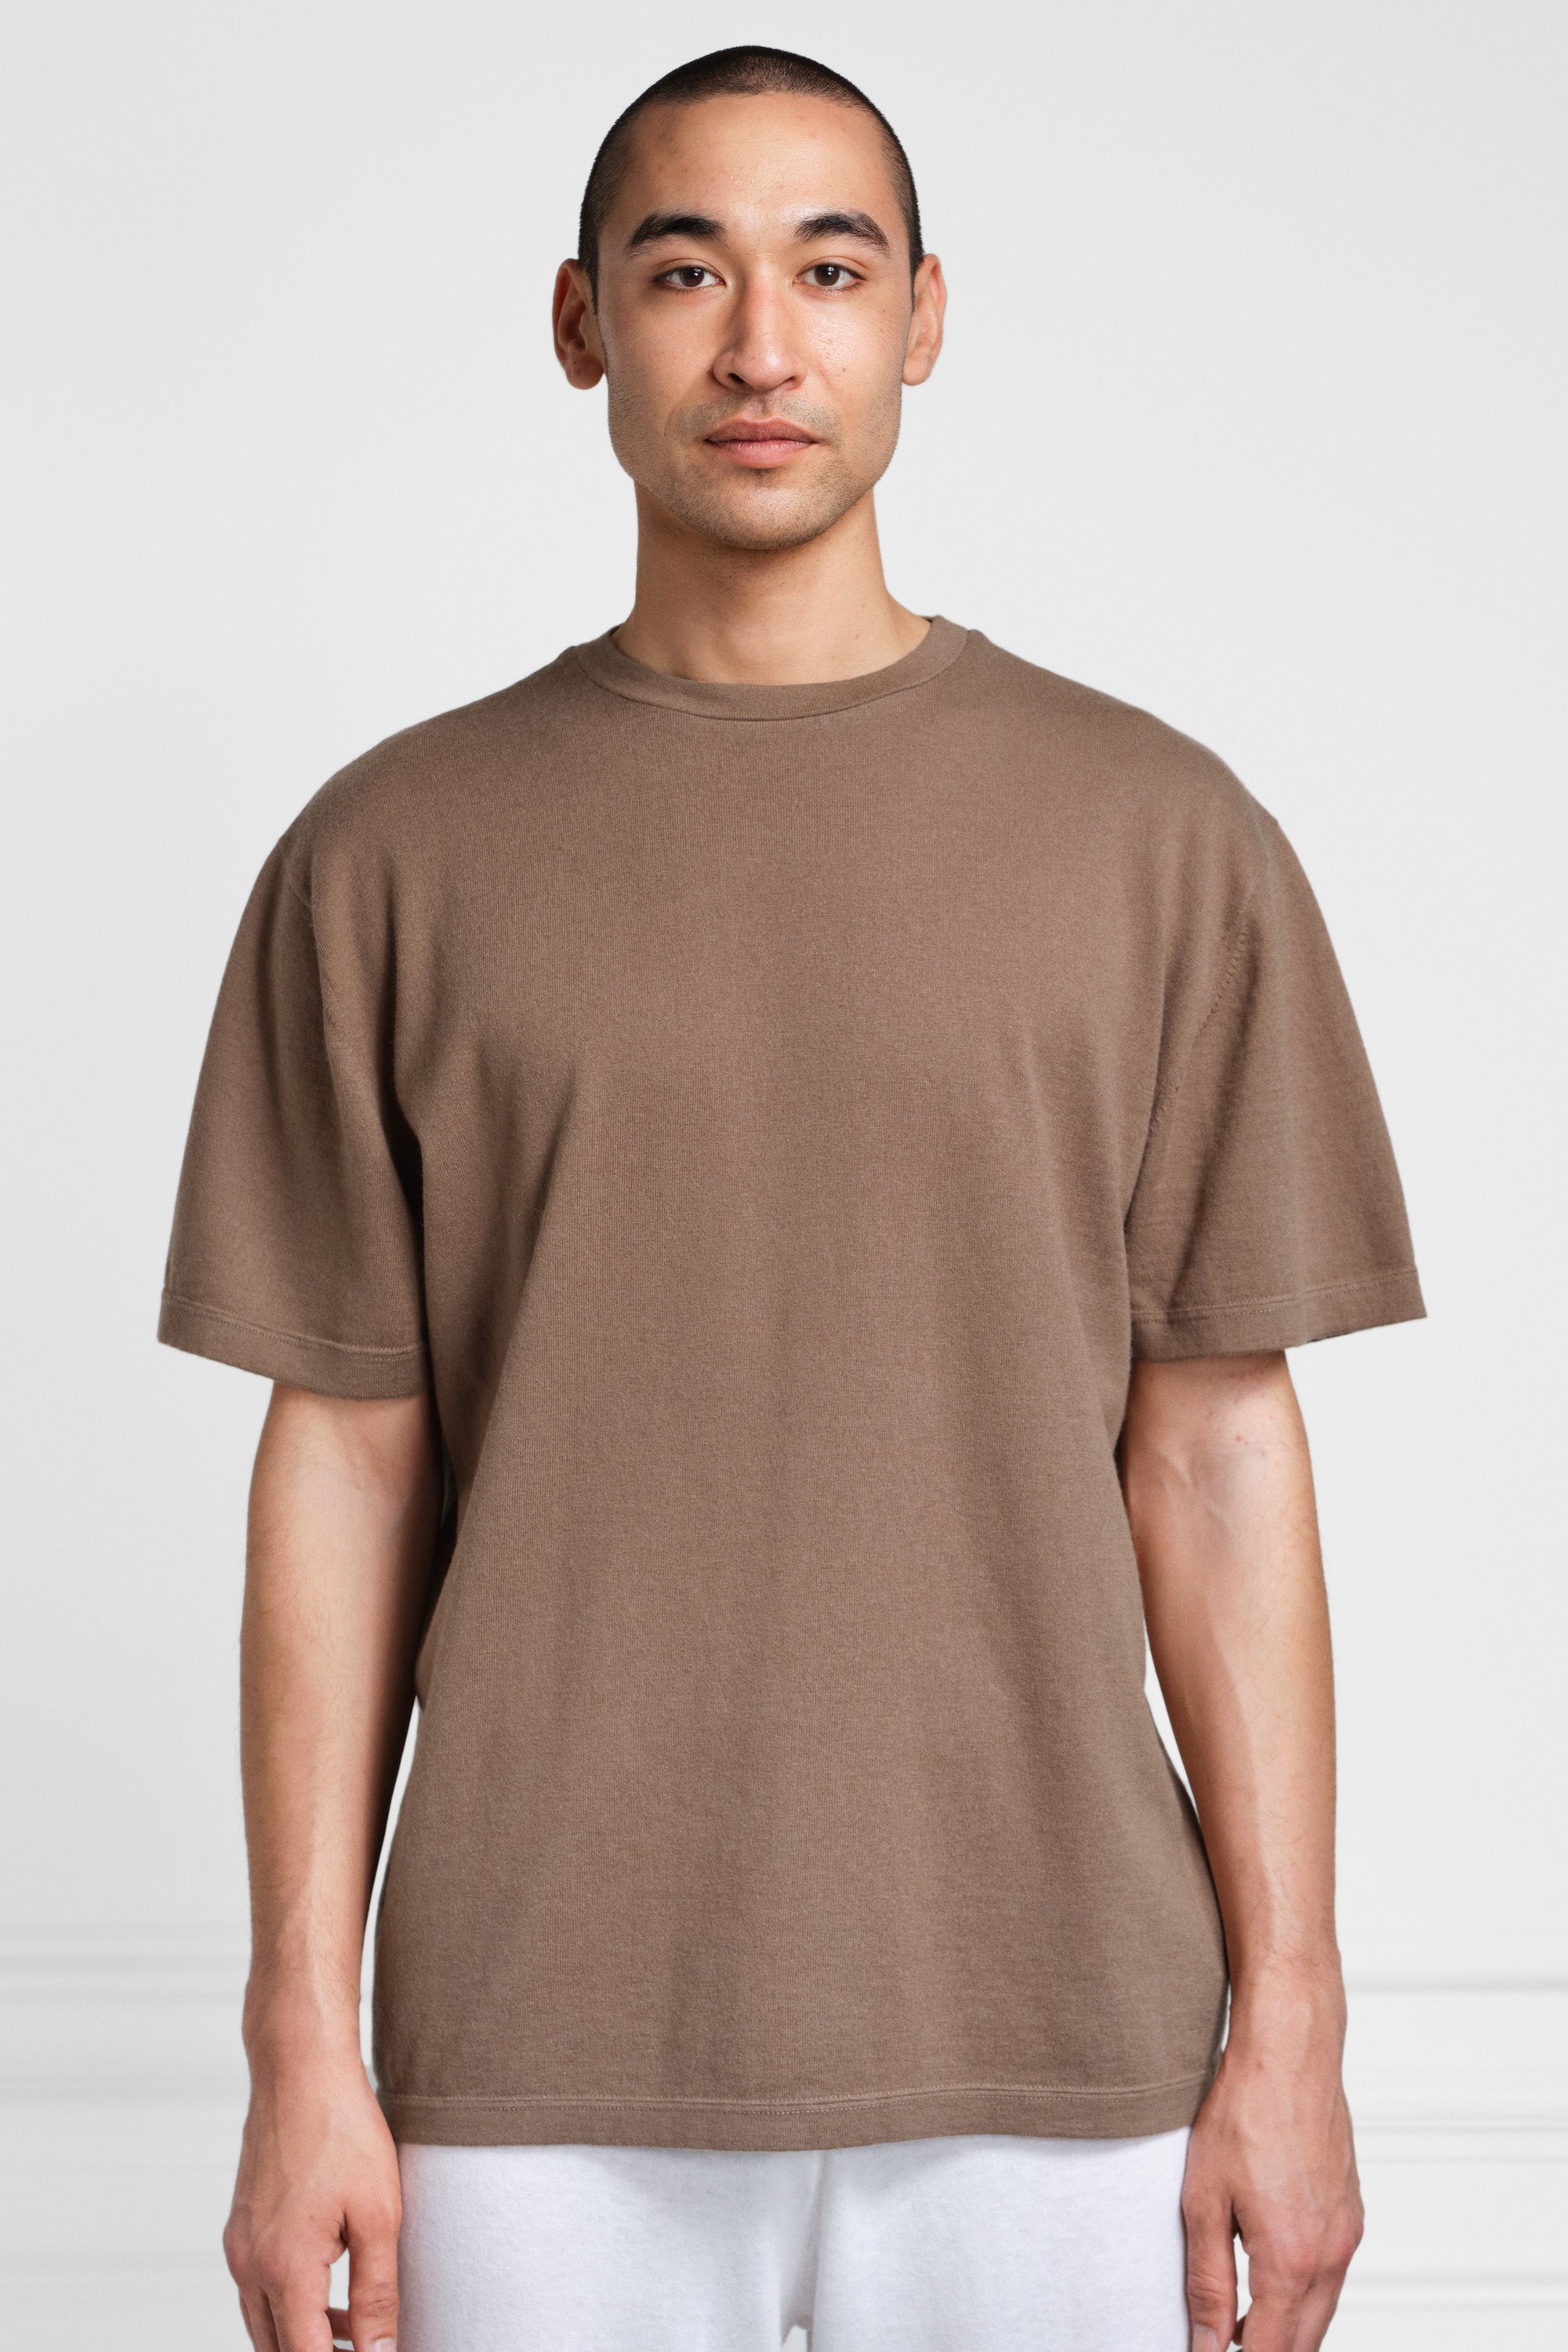 extreme cashmere t-shirt n°269 rik – cotton-cashmere